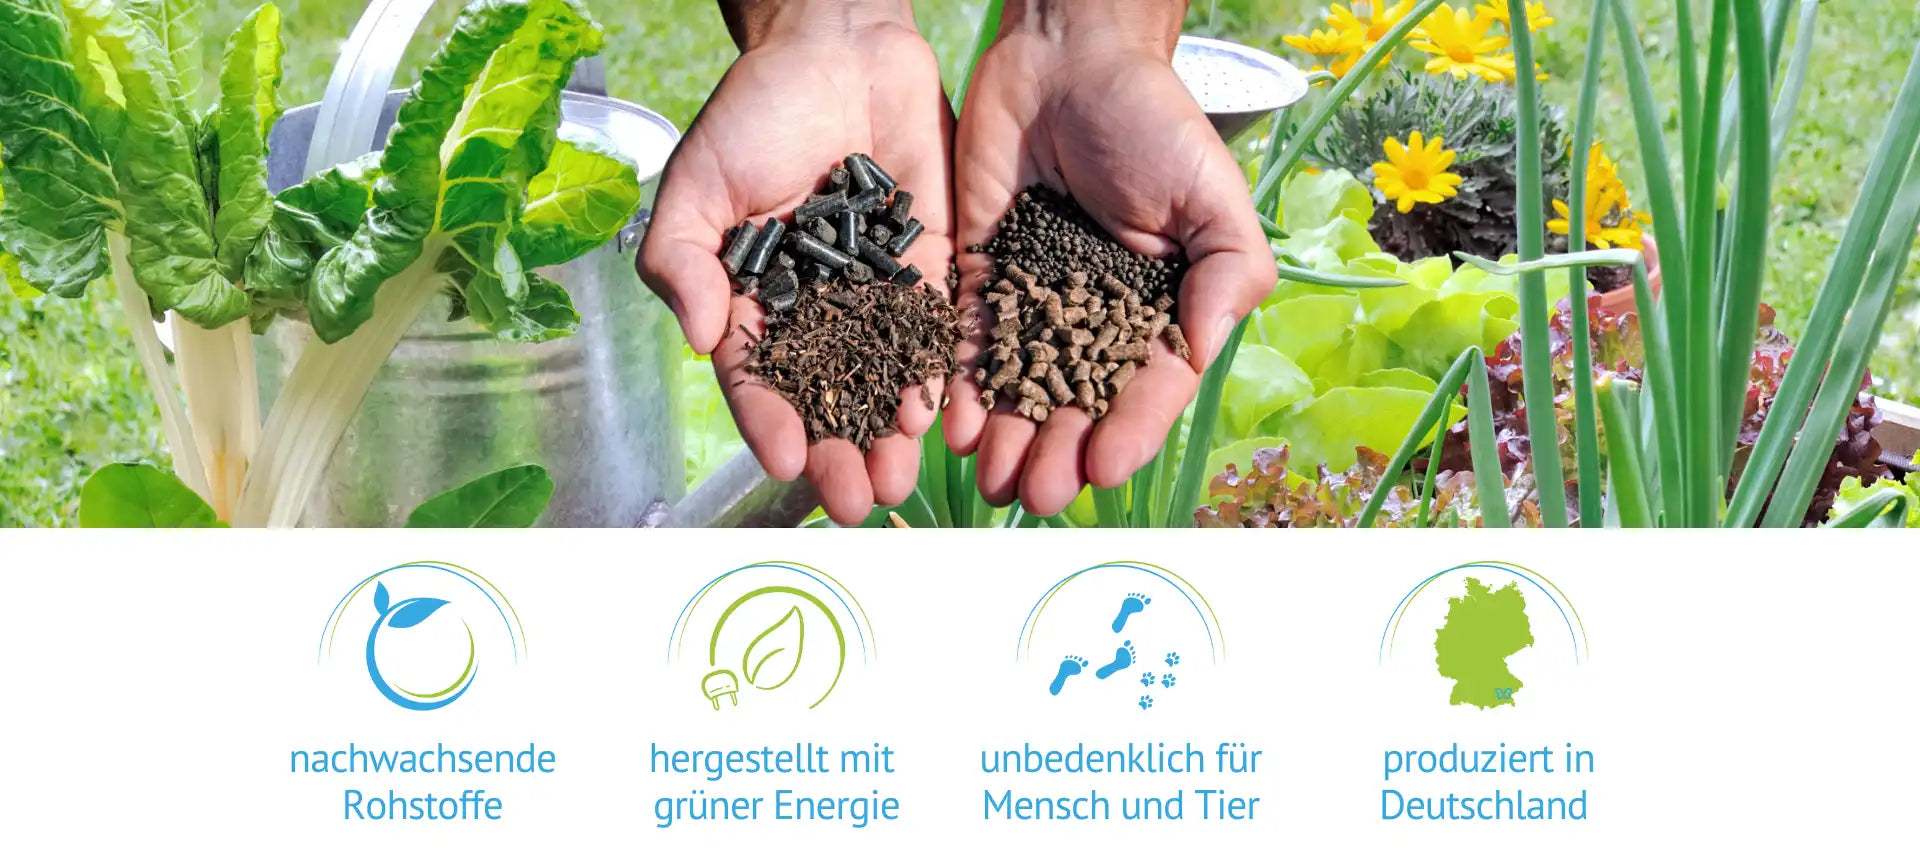 nachwachsenden Rohstoffe, hergestellt mit grüner Energie, unbedenklich für Mensch und Tier, produziert in Deutschland